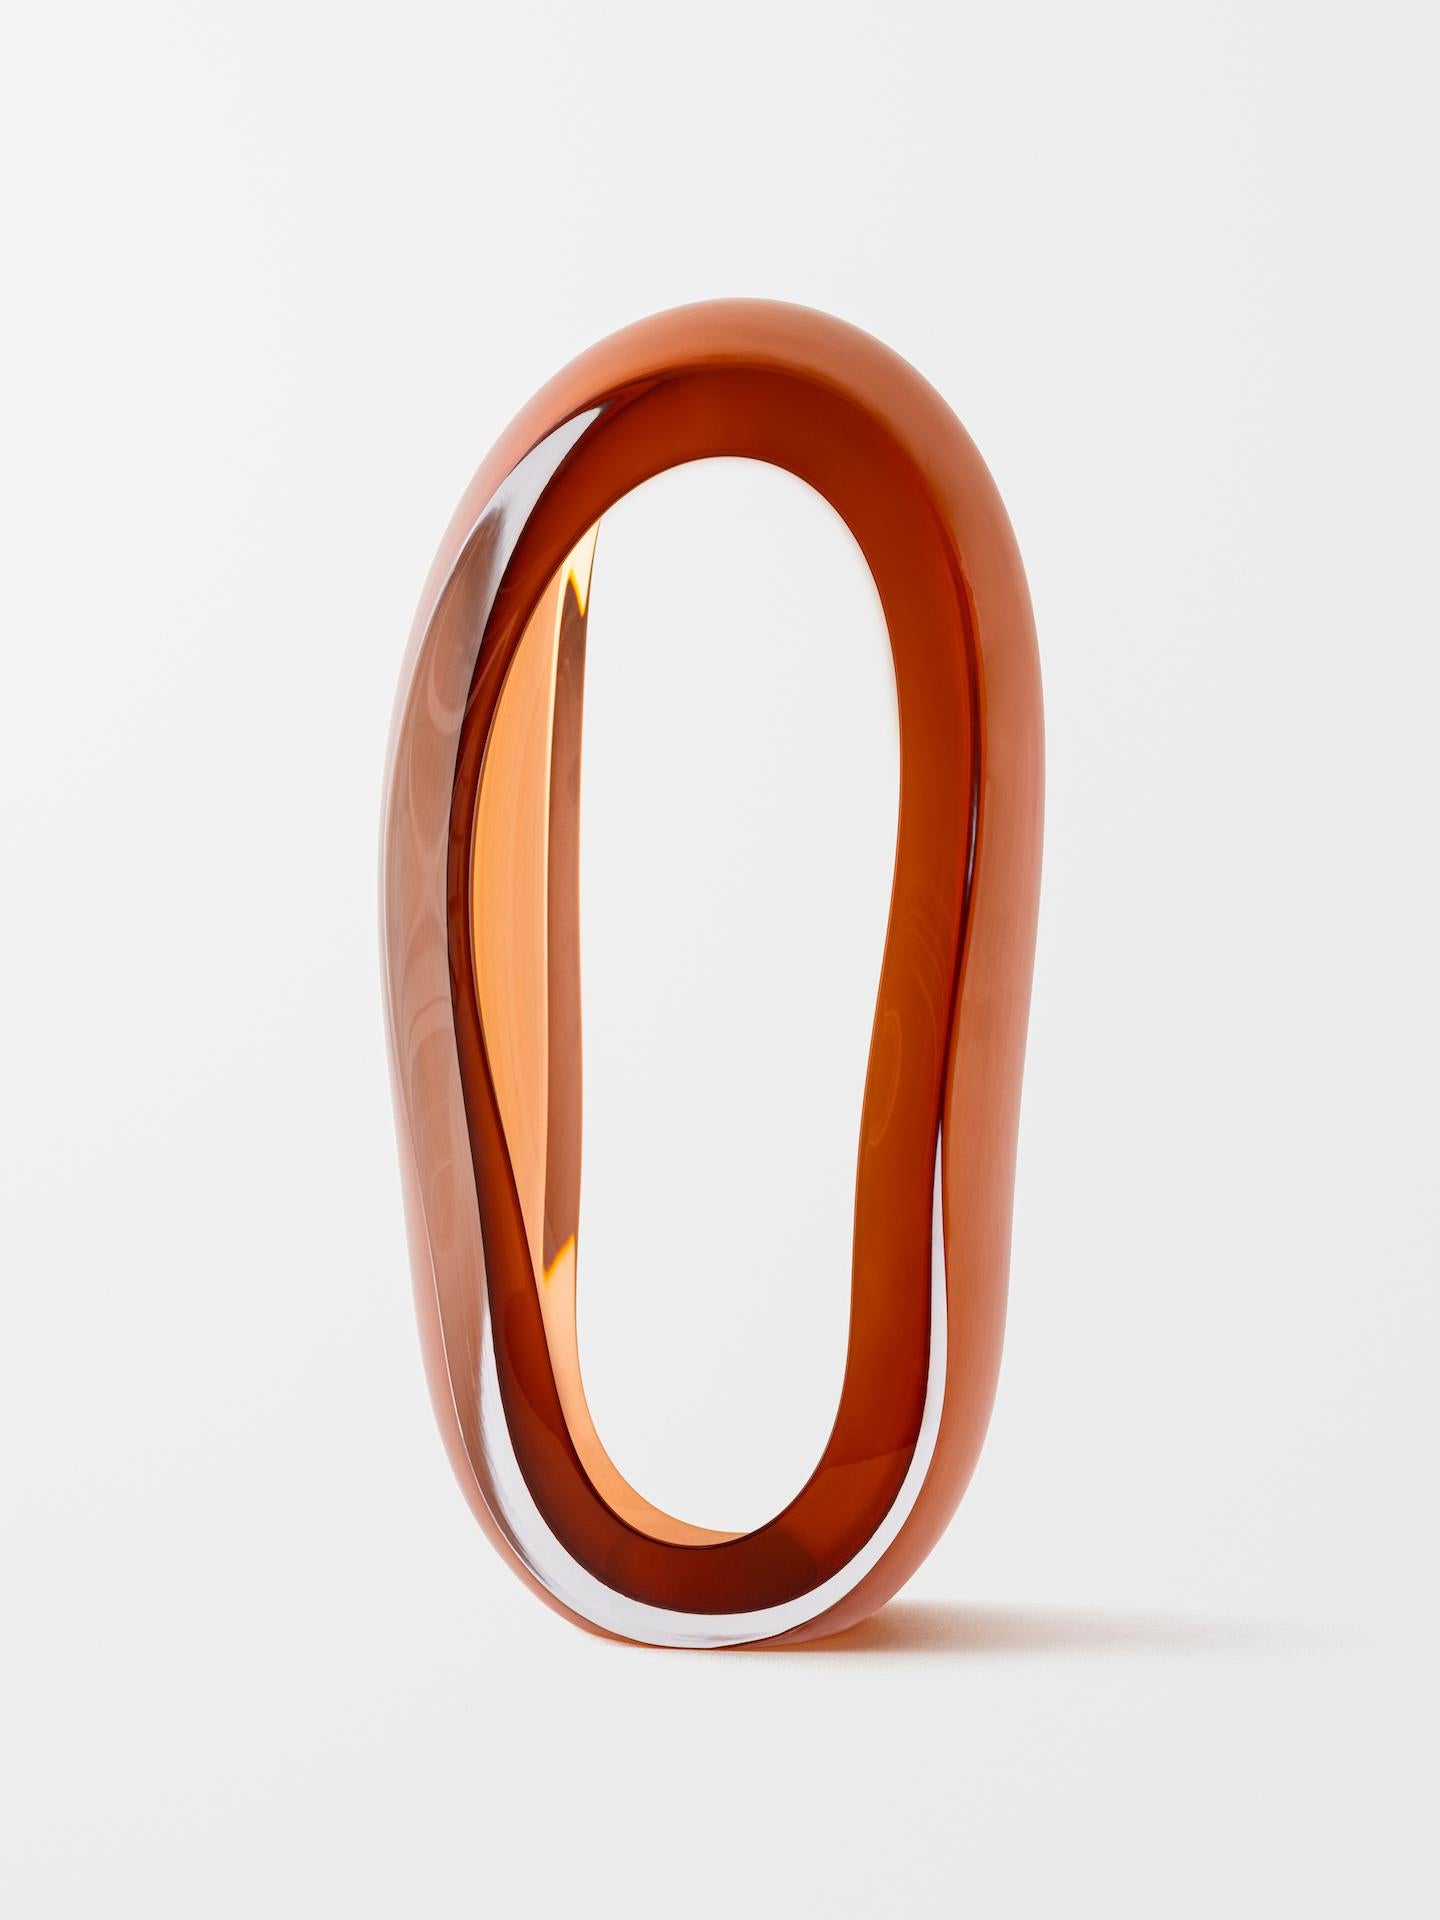 Loops (Orange) - Beige Abstract Sculpture by Jonas Noël Niedermann